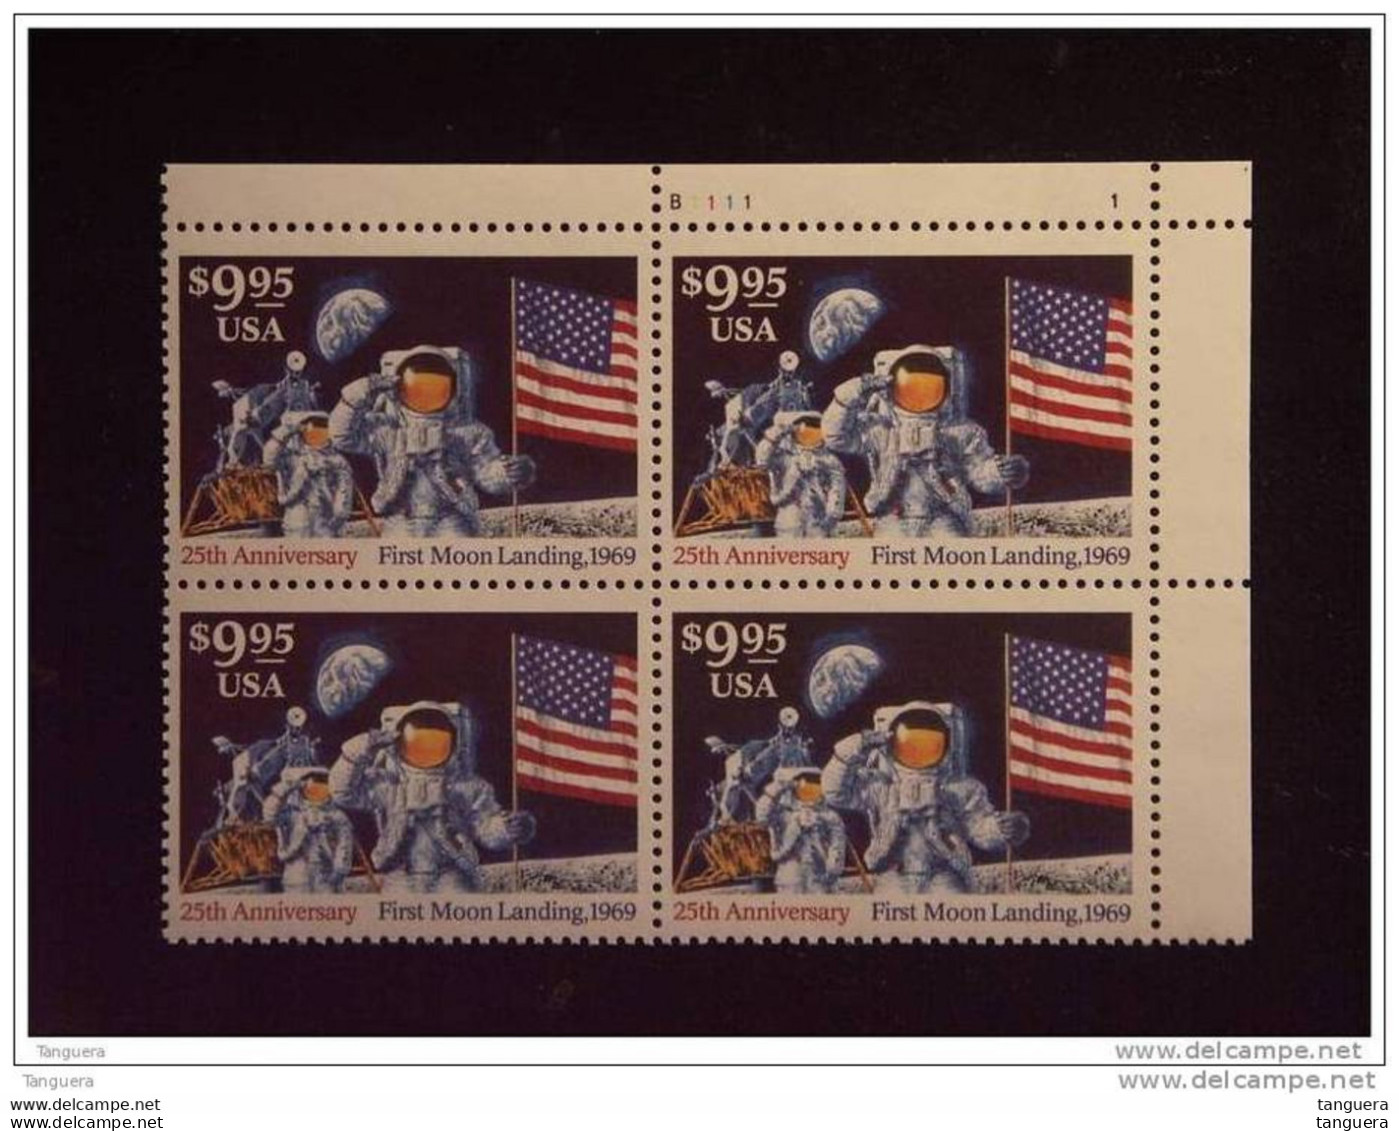 USA Etats-Unis D'Amerique United States 1994 Moon Landing Bloc Of 4 X Yv 2259 MNH ** Plate N° B1111 - Numéros De Planches